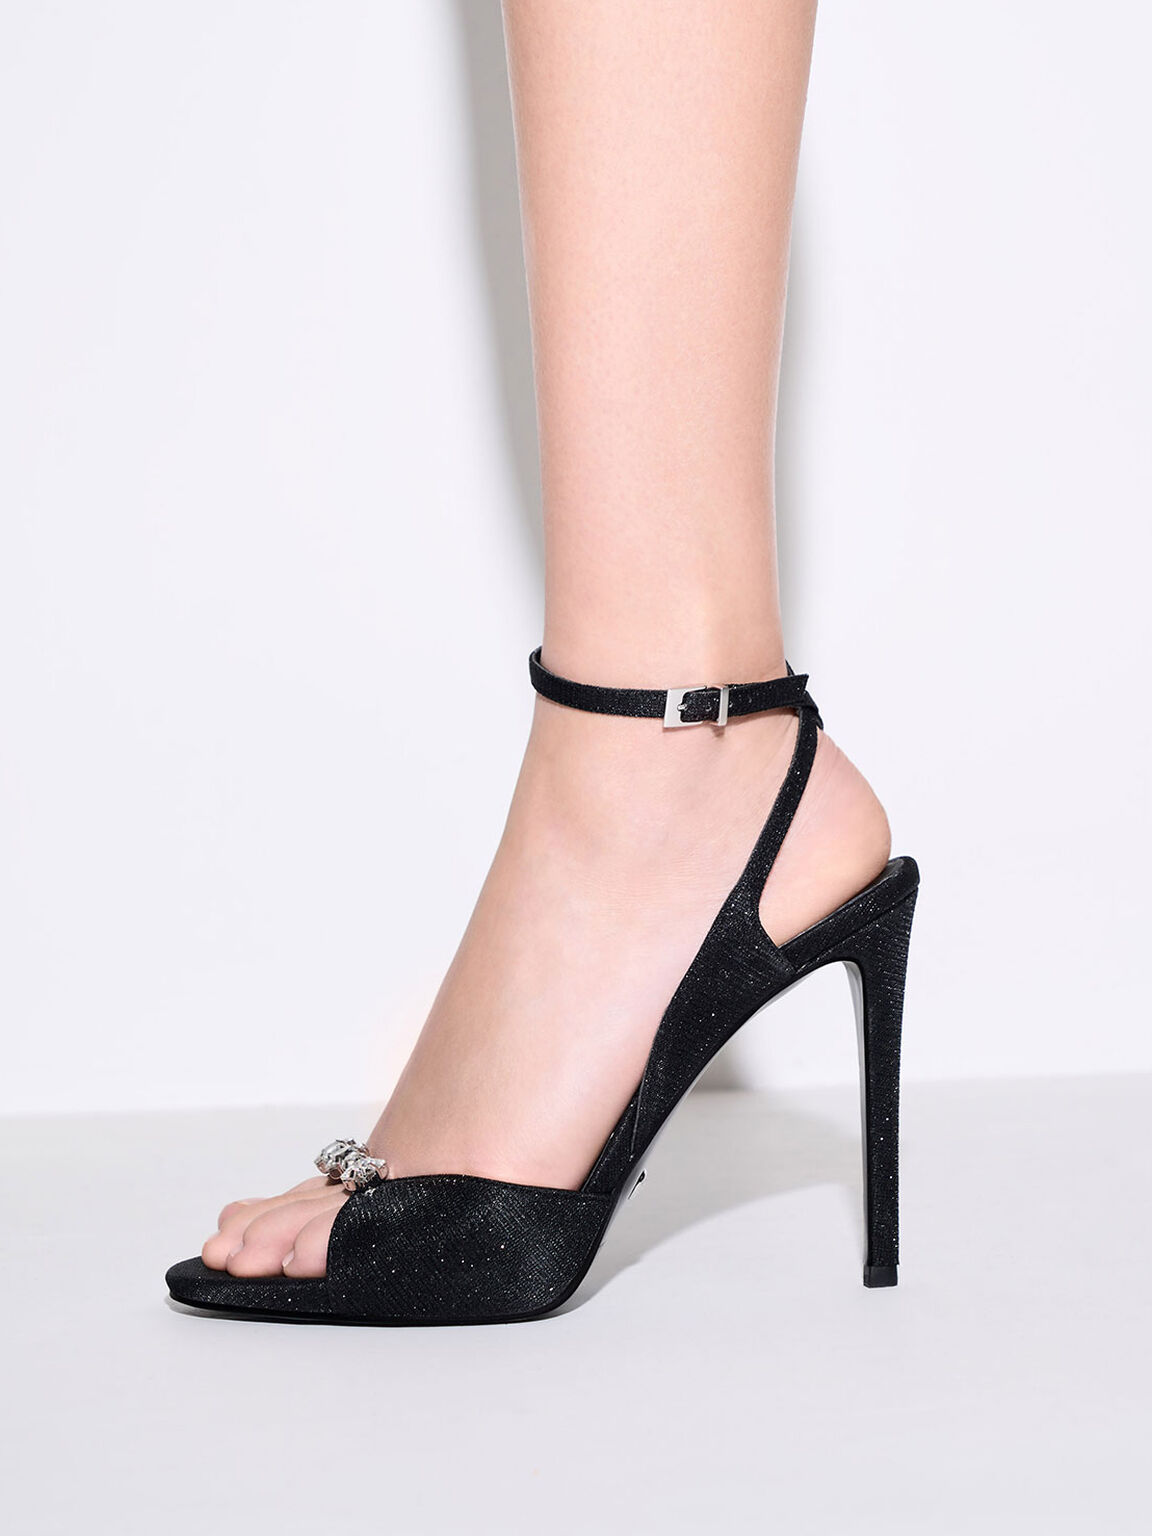 Glittered Gem-Encrusted Ankle Strap Sandals, Black, hi-res